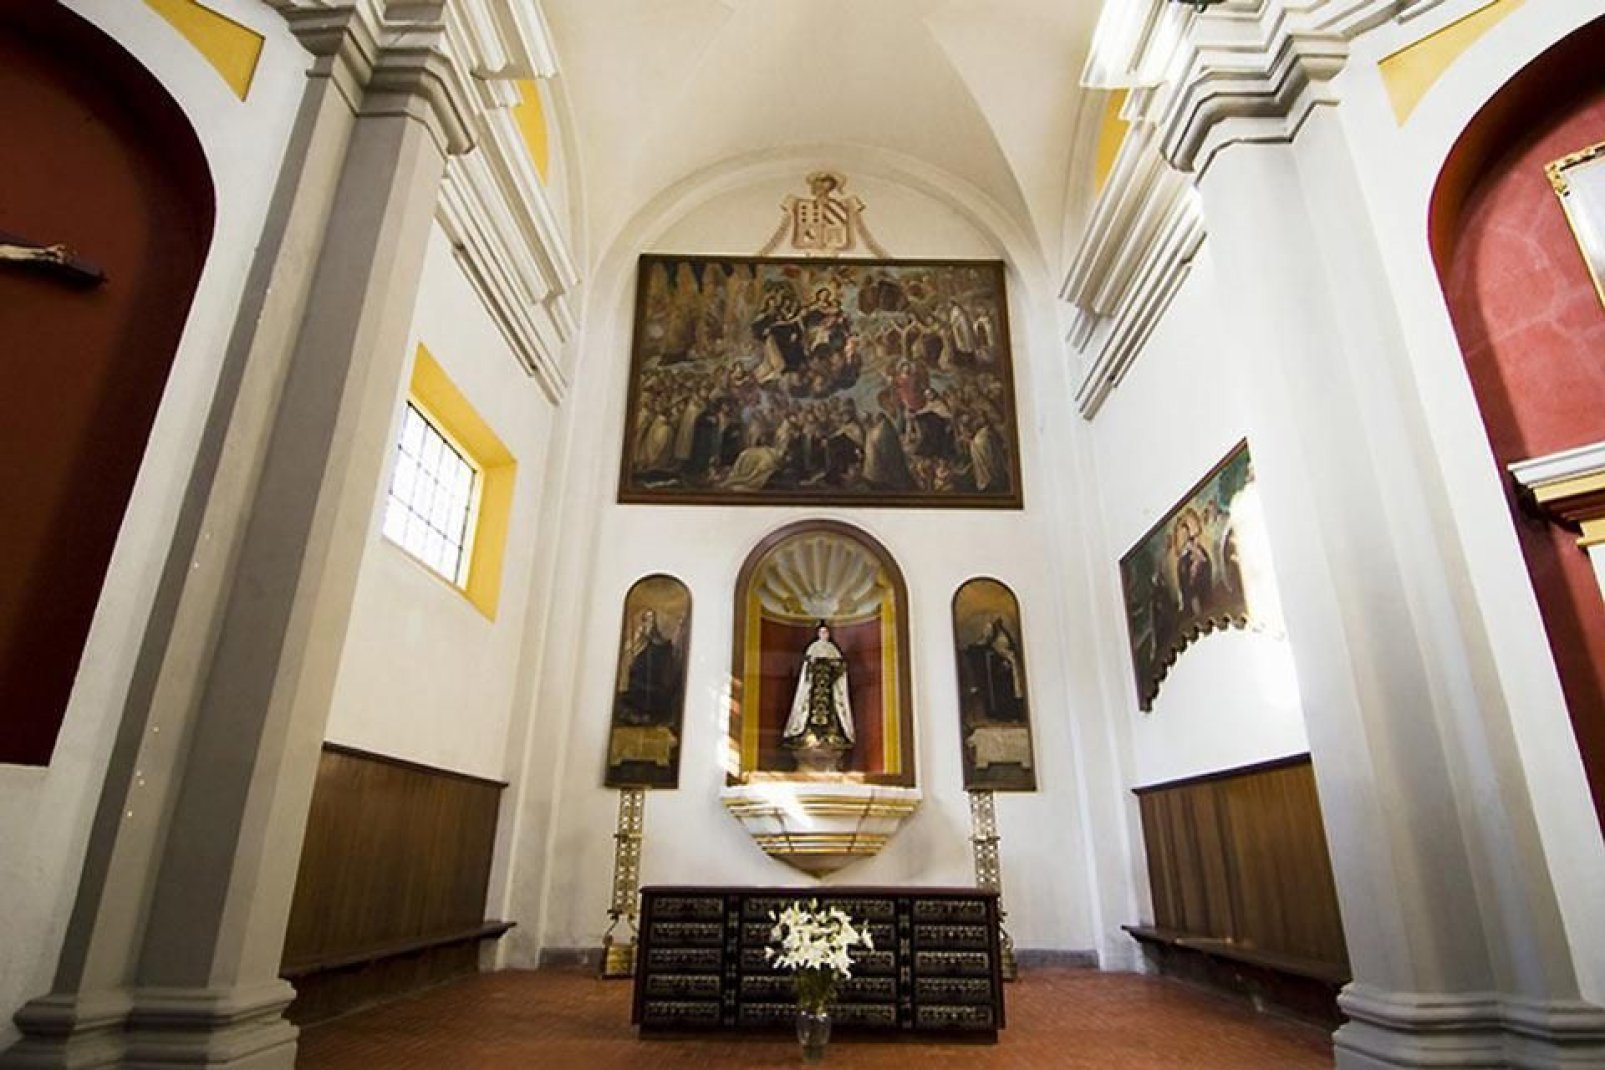 All' interno della Cattedrale è notevole la cappella del Rosario, realizzata tra il 1650 e il 1690.